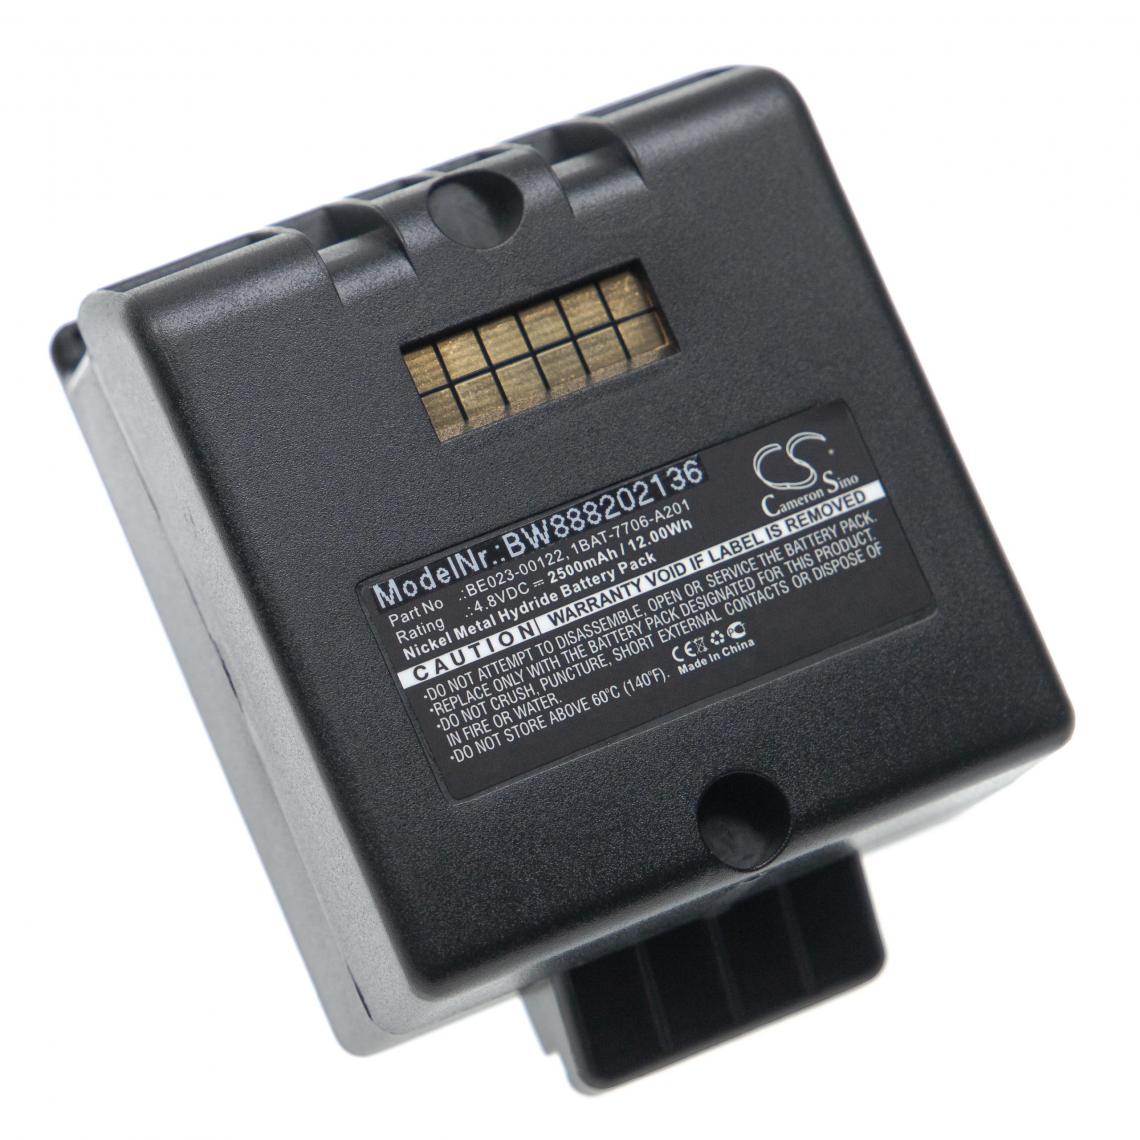 Vhbw - vhbw Batterie compatible avec Cattron Theimig LRC, LRC-L, LRC-M télécommande industrielle (2500mAh, 4,8V, NiMH) - noir - Autre appareil de mesure